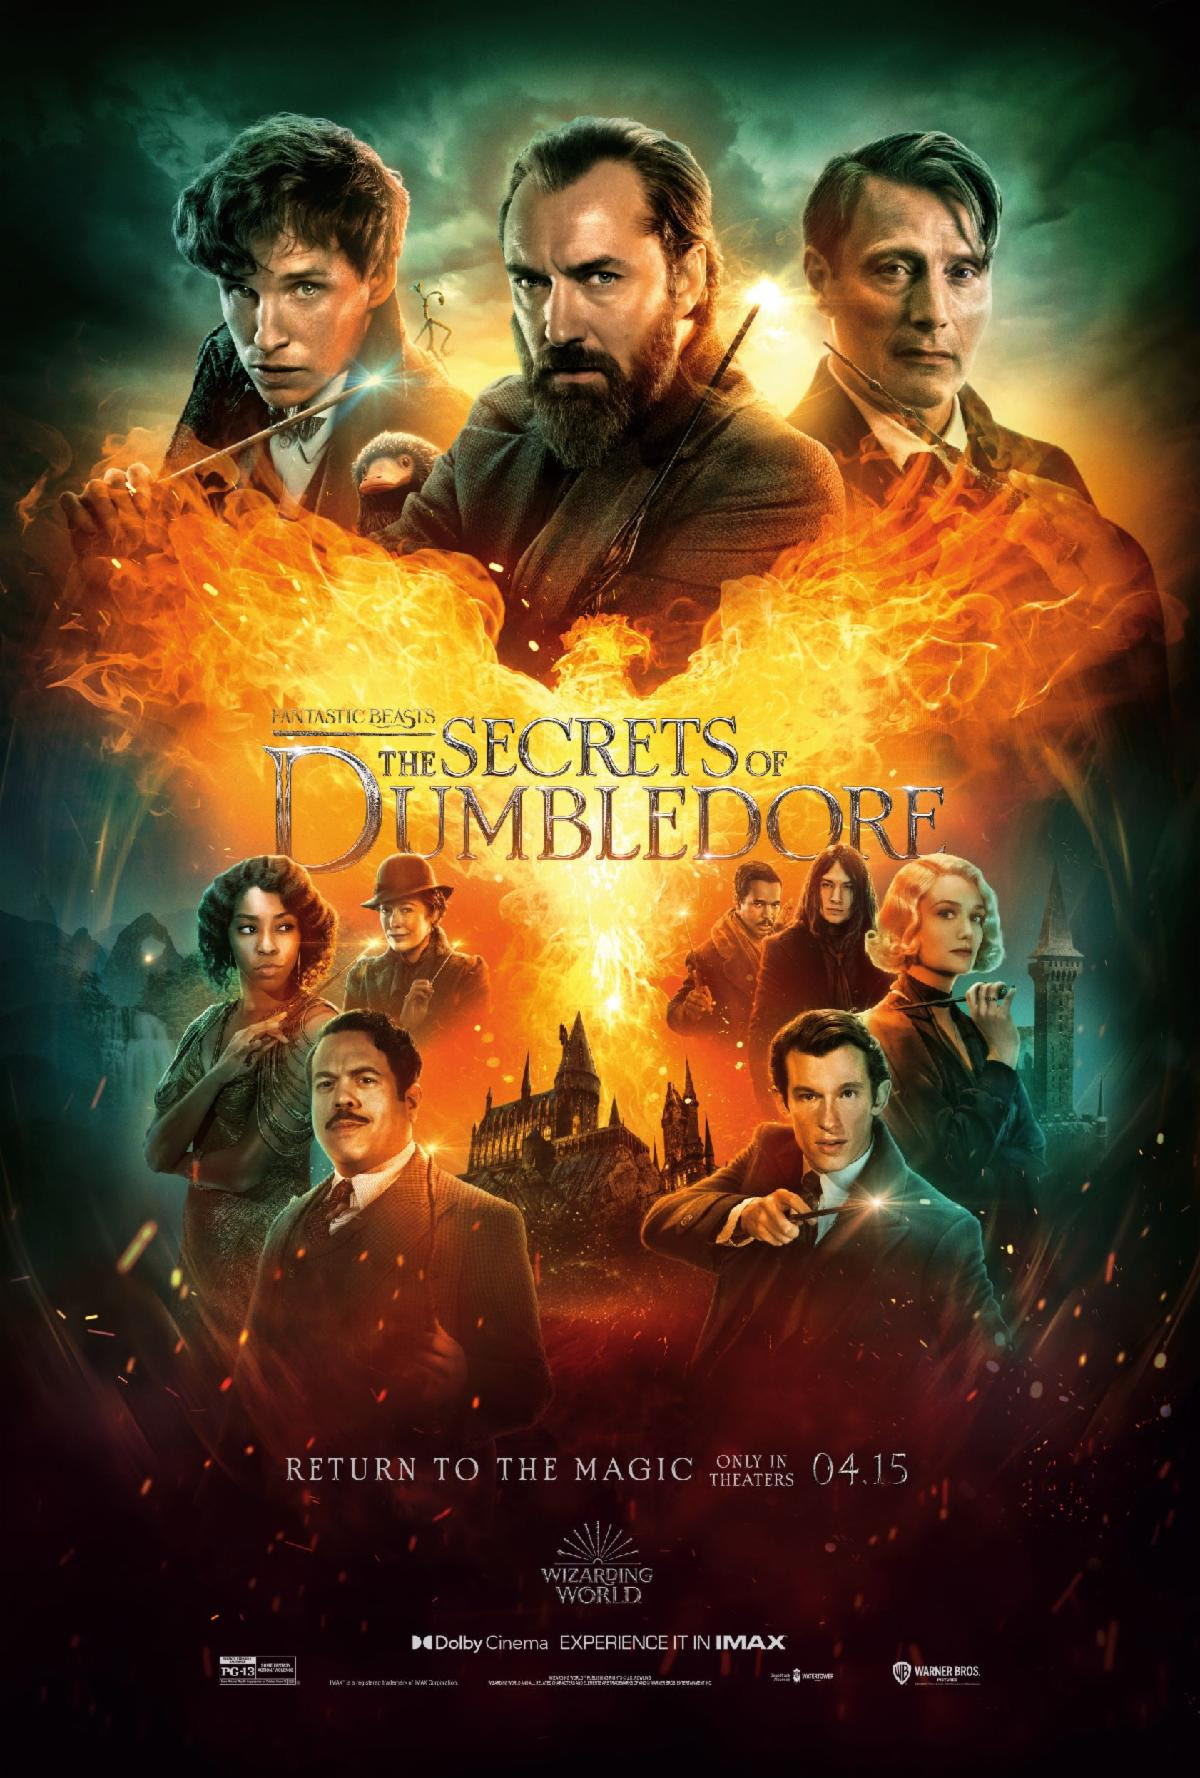 Fantastic Beats 3: The Secrets of Dumbledore – Movie Review